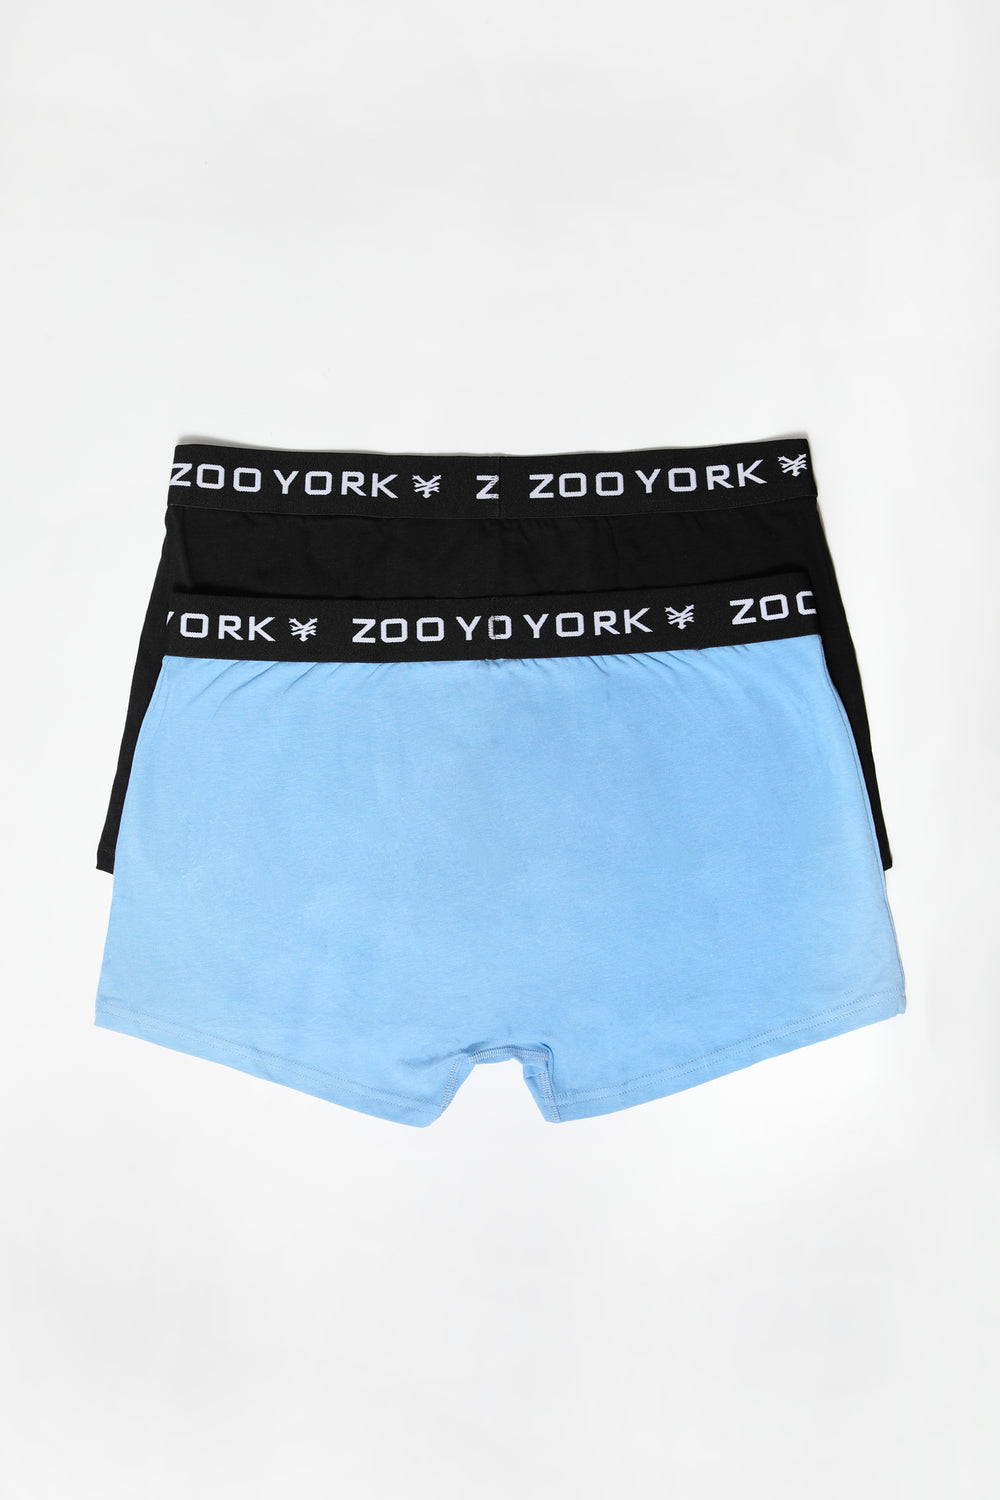 2 Paires de Boxers Zoo York Homme Bleu pale